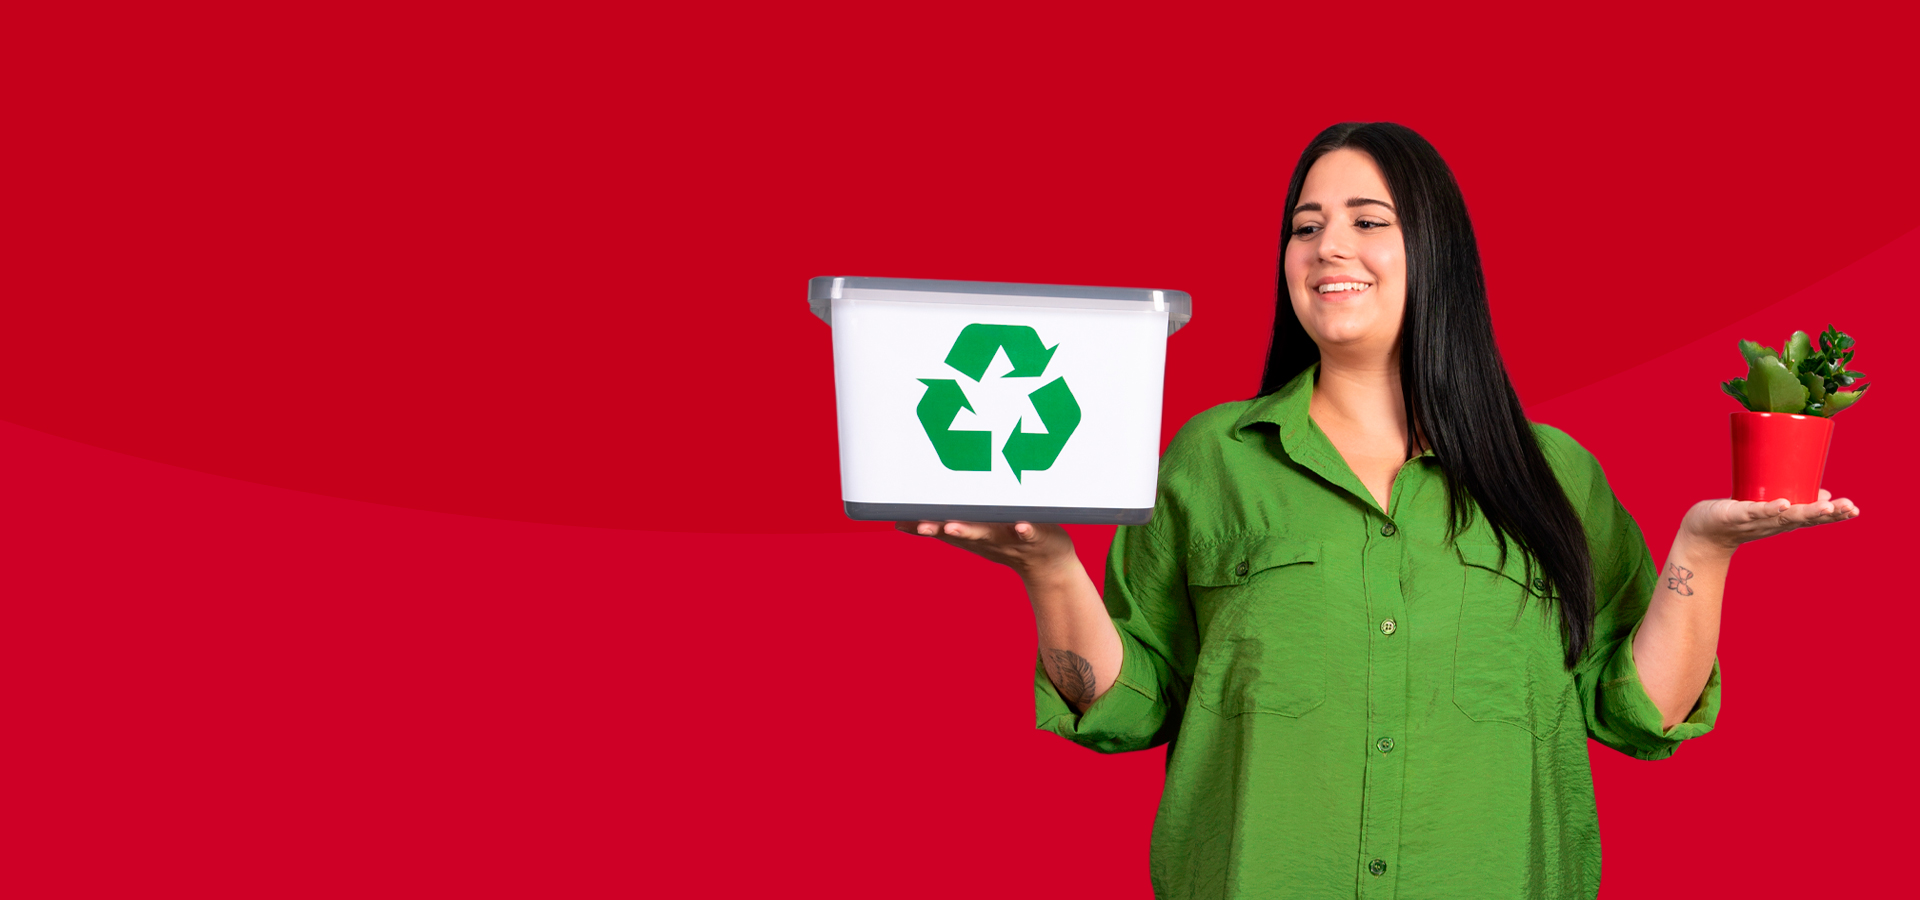 Frau hält in rechter Hand einen Blumentopf und in linker Hand eine Box mit Recyclingzeichen